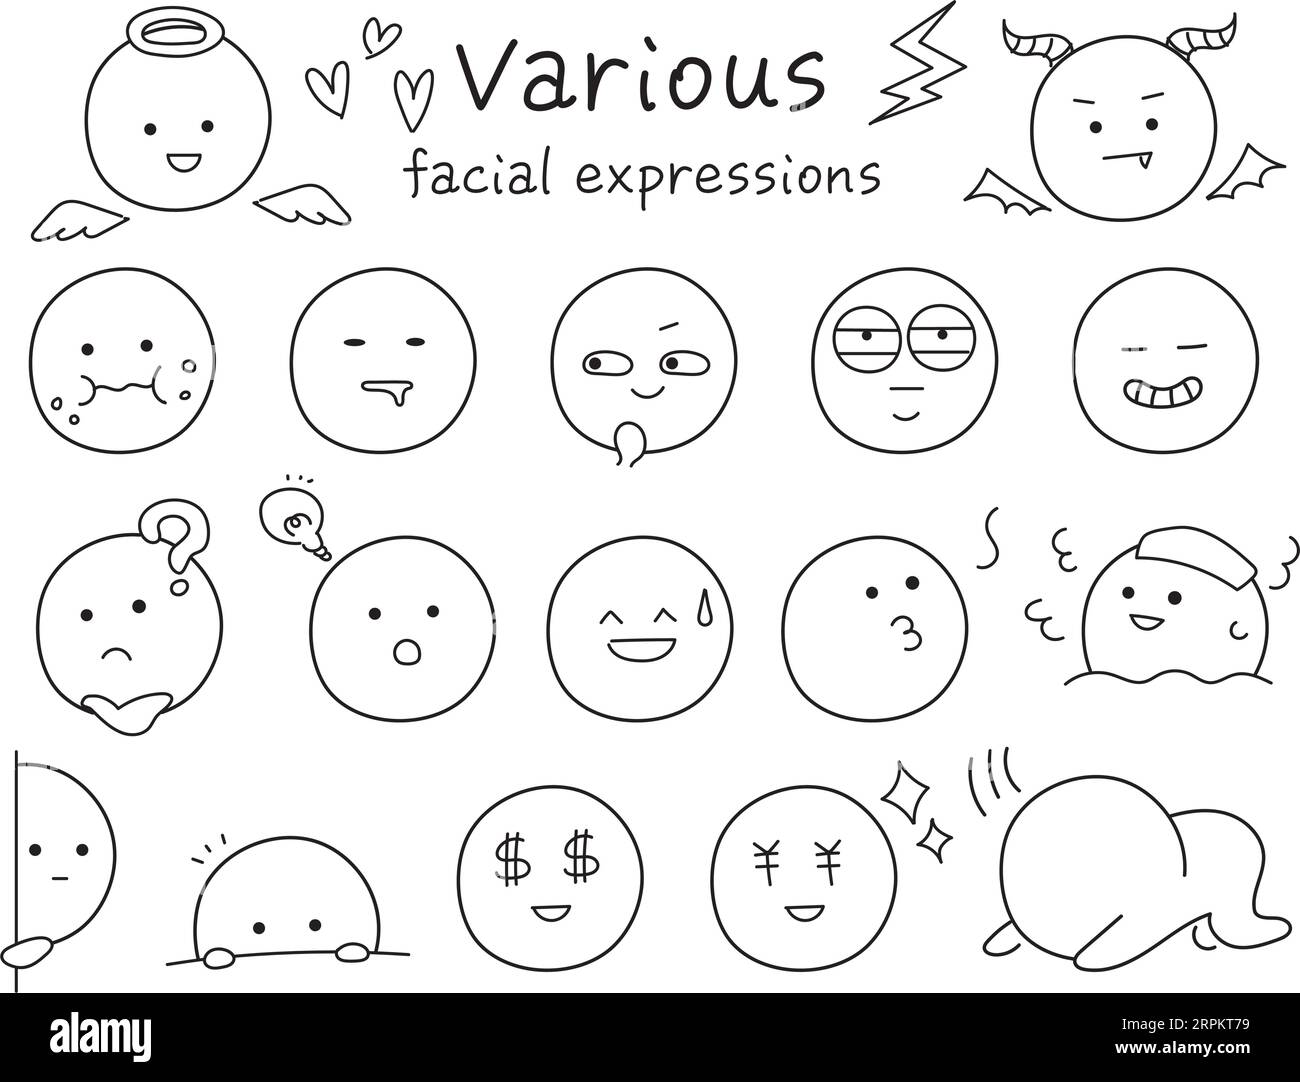 Einfache und niedliche Ikonensätze mit verschiedenen Gesichtsausdrücken. Schwarze Linienzeichnung mit handgezeichneter Note. Sammlung lustiger Emojis. Stock Vektor